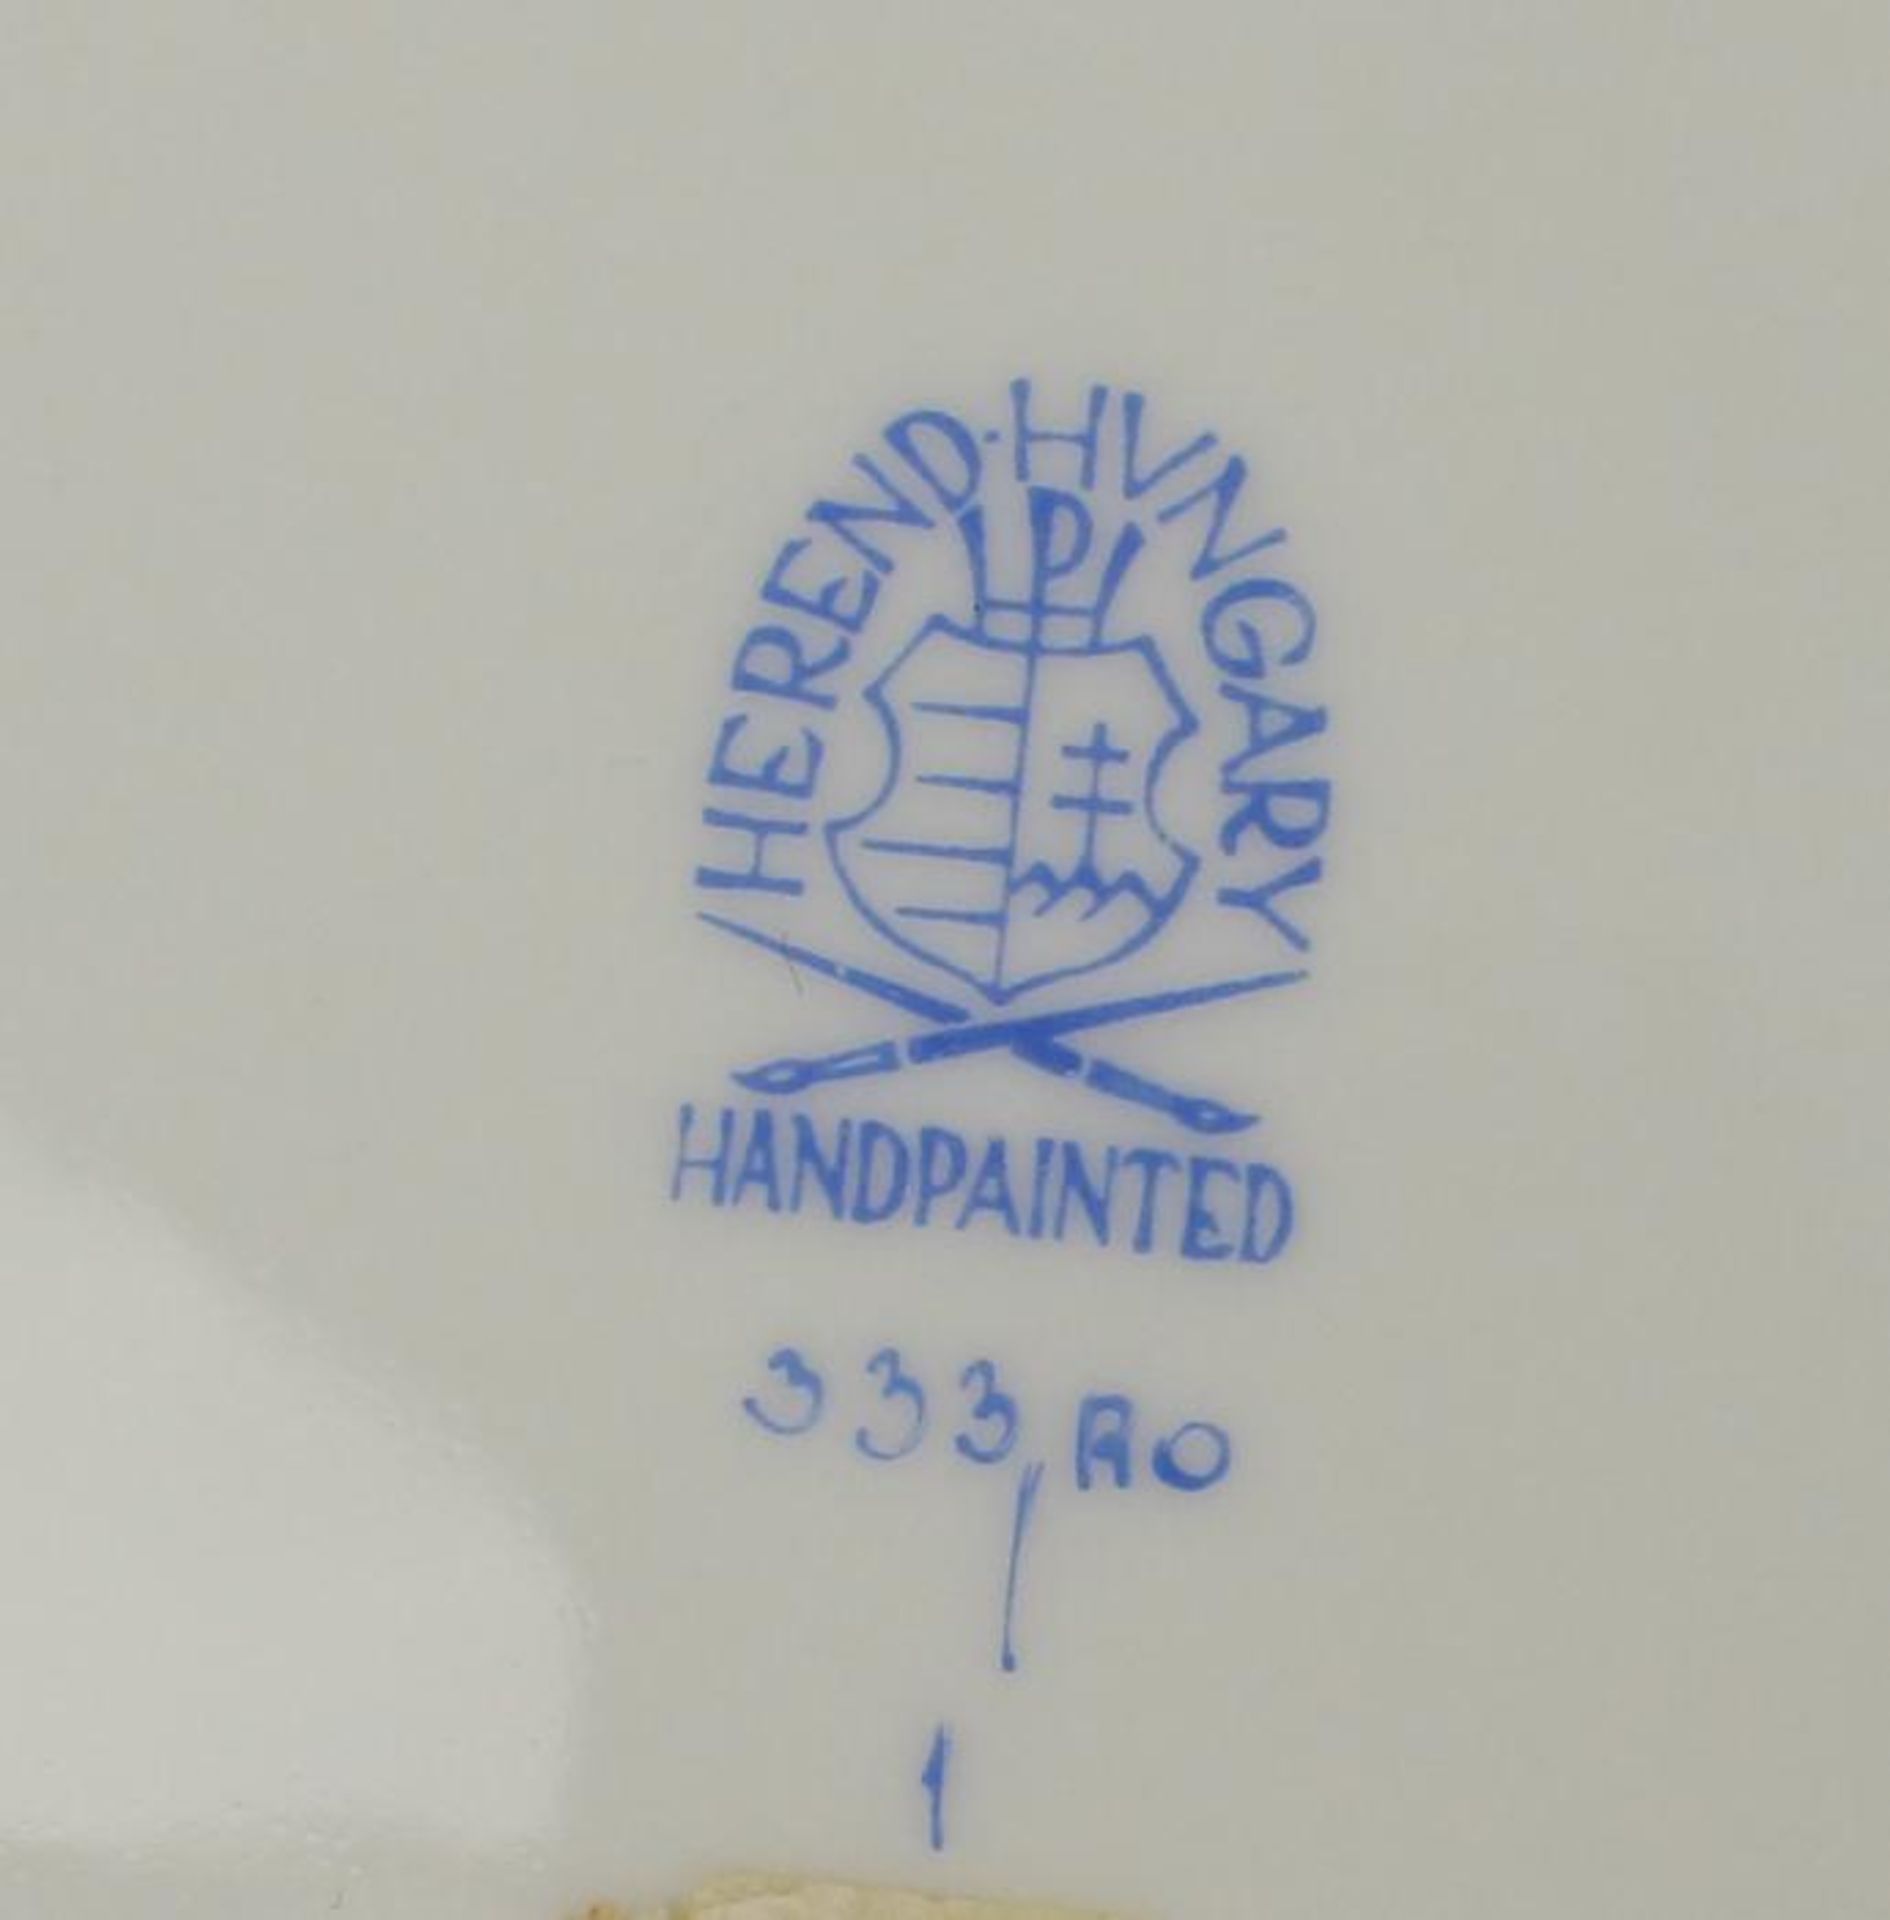 Herend - Deckelvaseblaue Stempelmarke, Rokokostil, Dekor "Rothschild", runder abgesetzter Stand, - Bild 3 aus 3